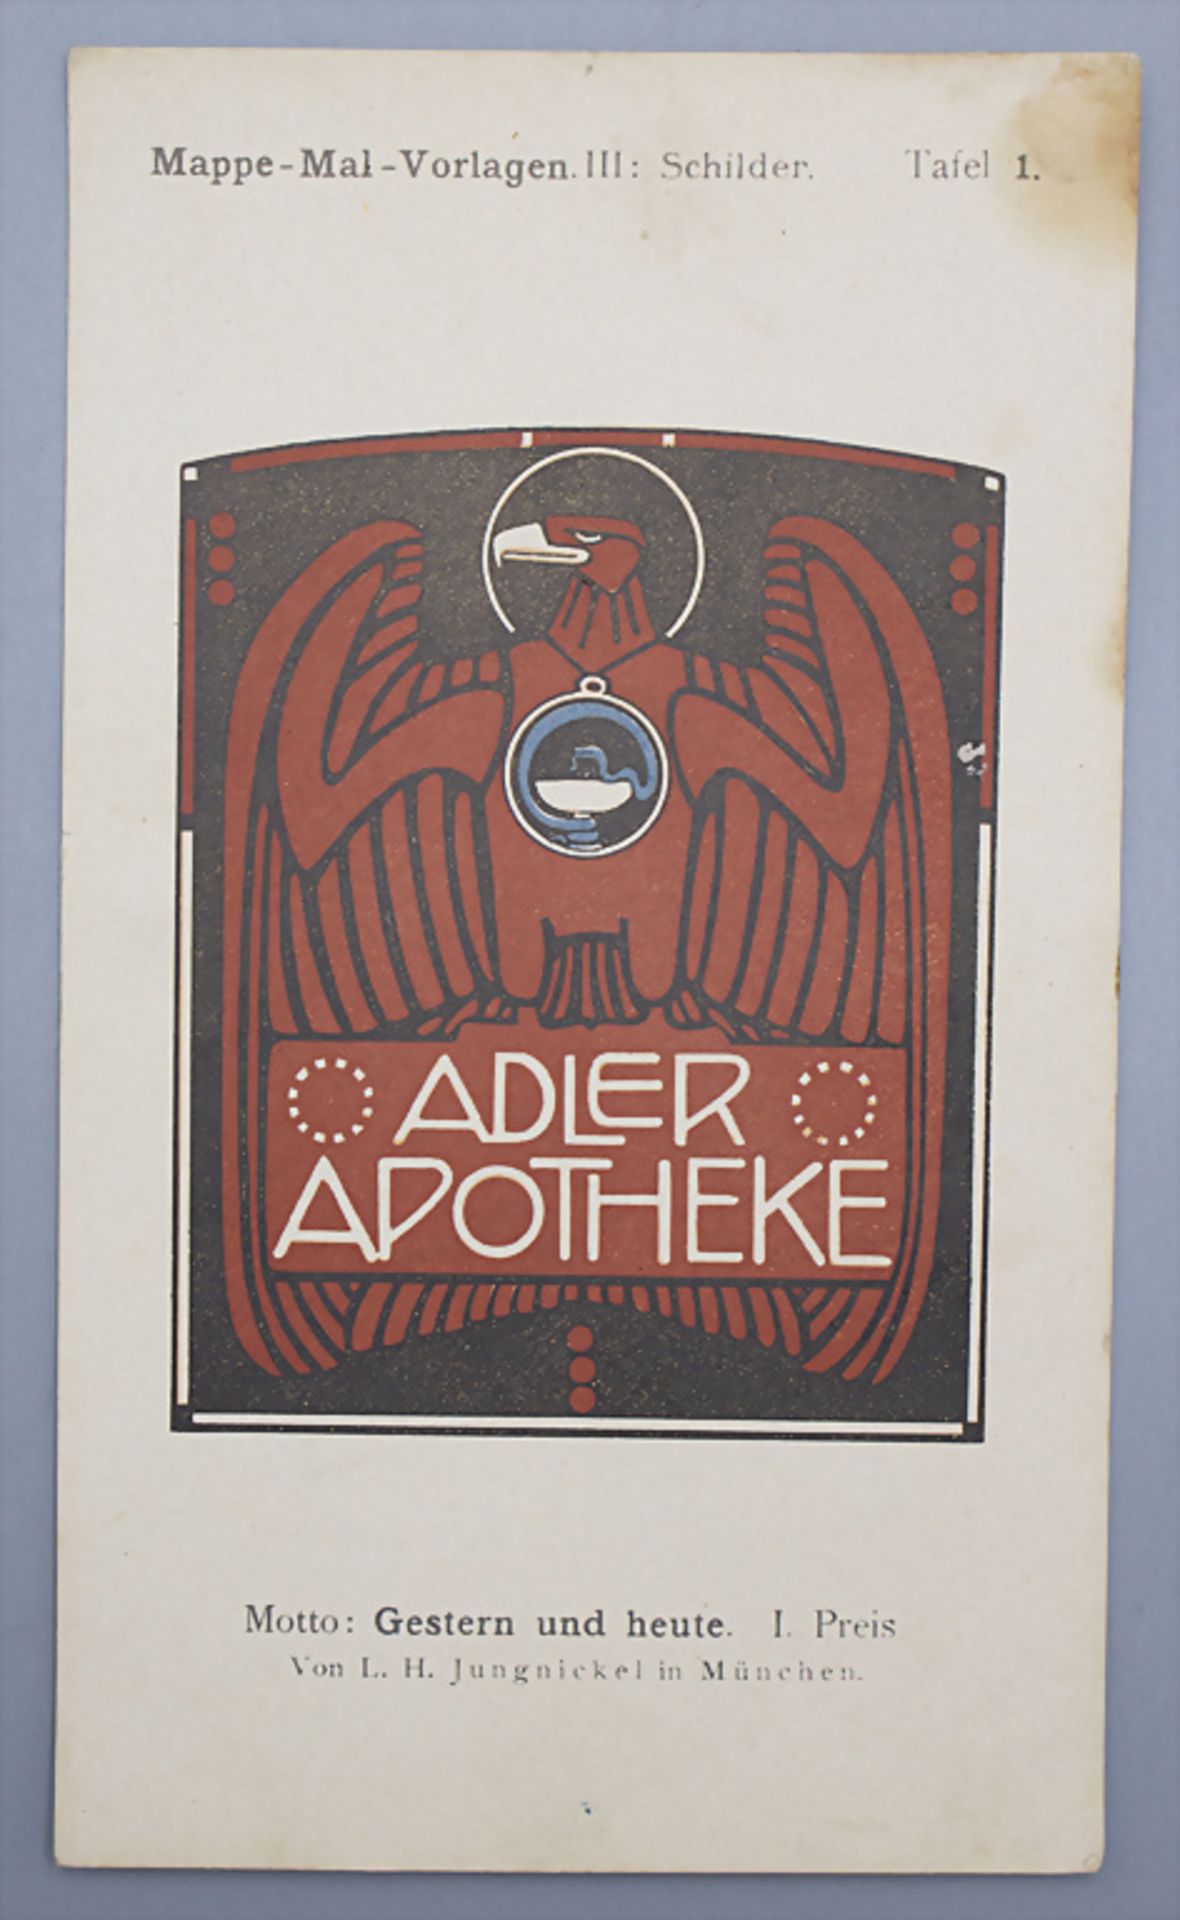 Jugendstil Mal-Vorlagen für Werbeschilder auf 36 Tafeln / 36 Art Nouveau pattern for ... - Bild 9 aus 9